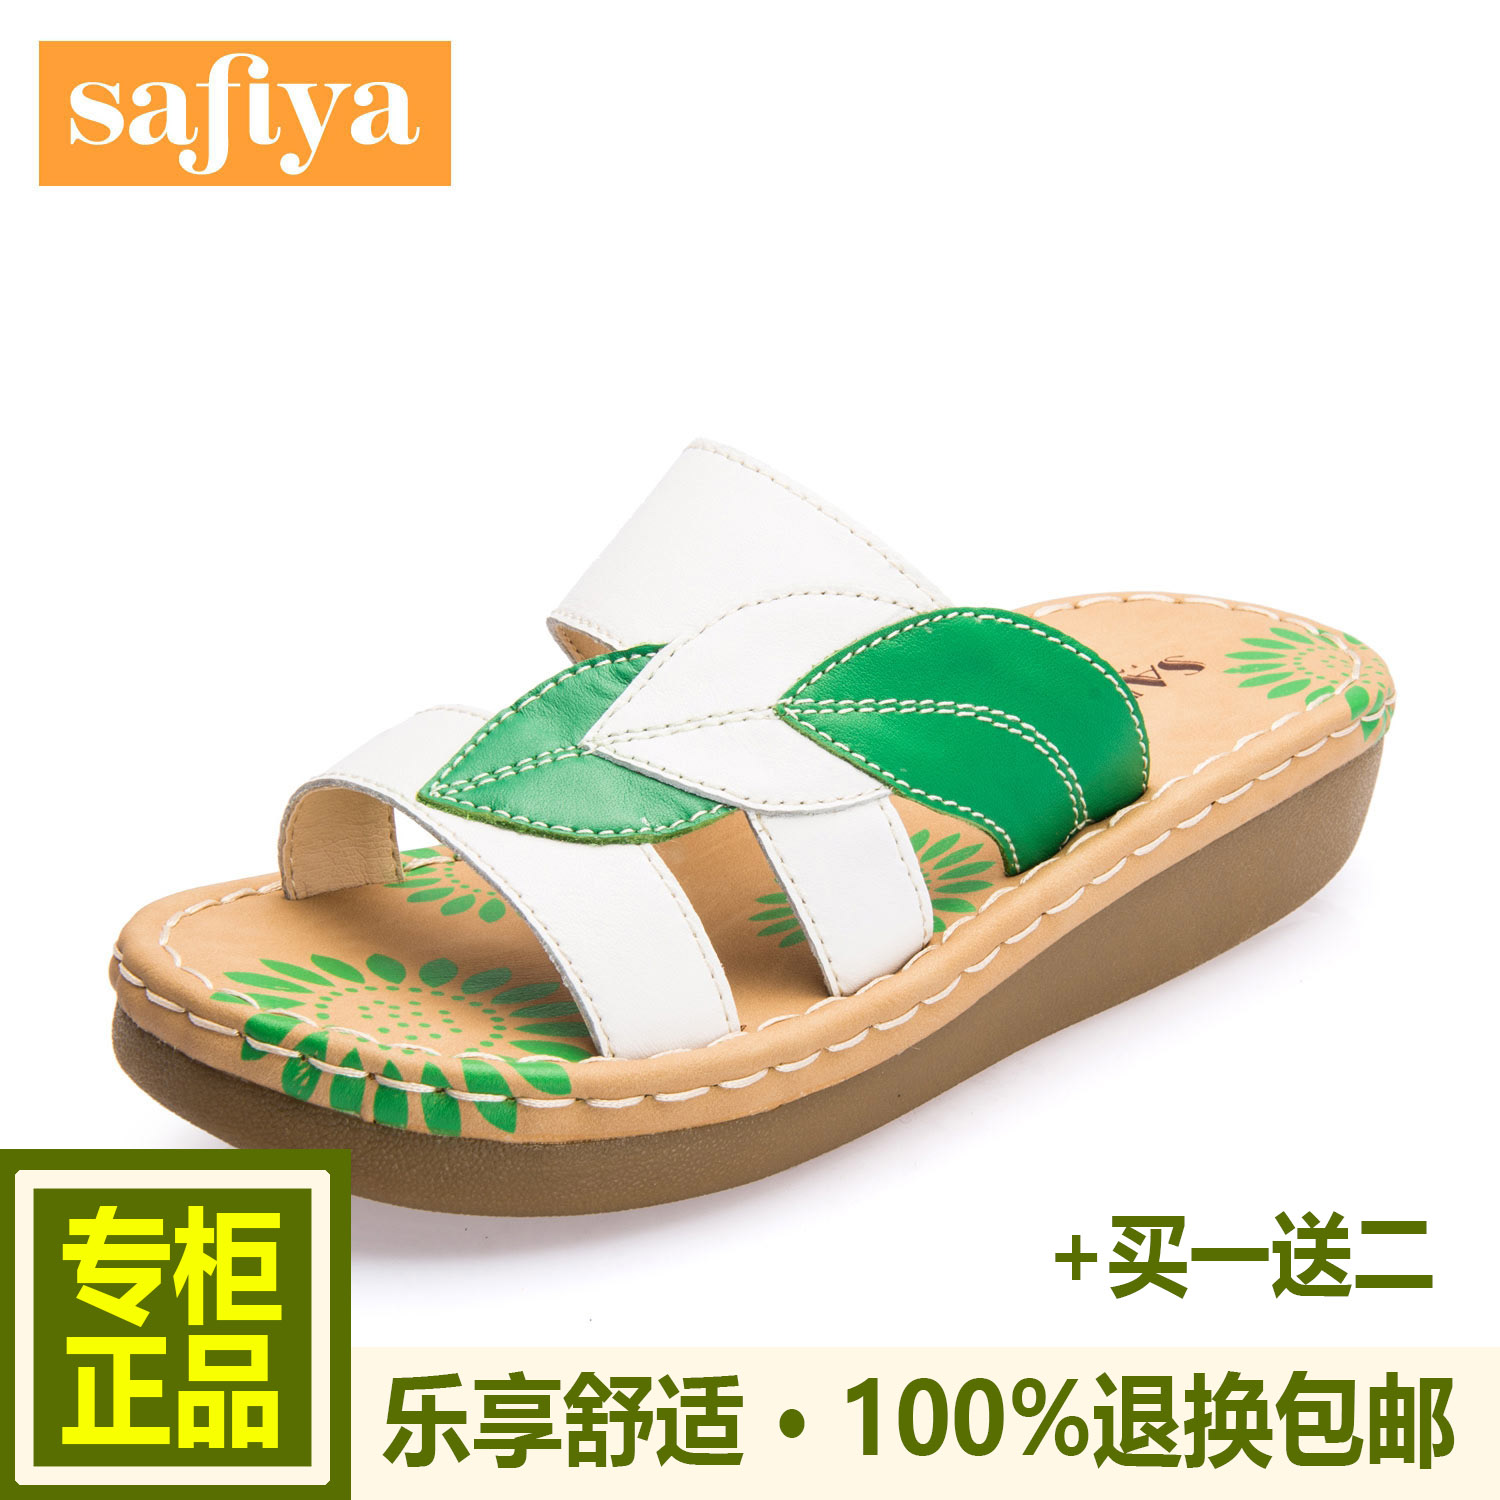 索菲娅2016夏季新款牛皮色拼树叶造型低跟舒适沙滩拖鞋SF52116009